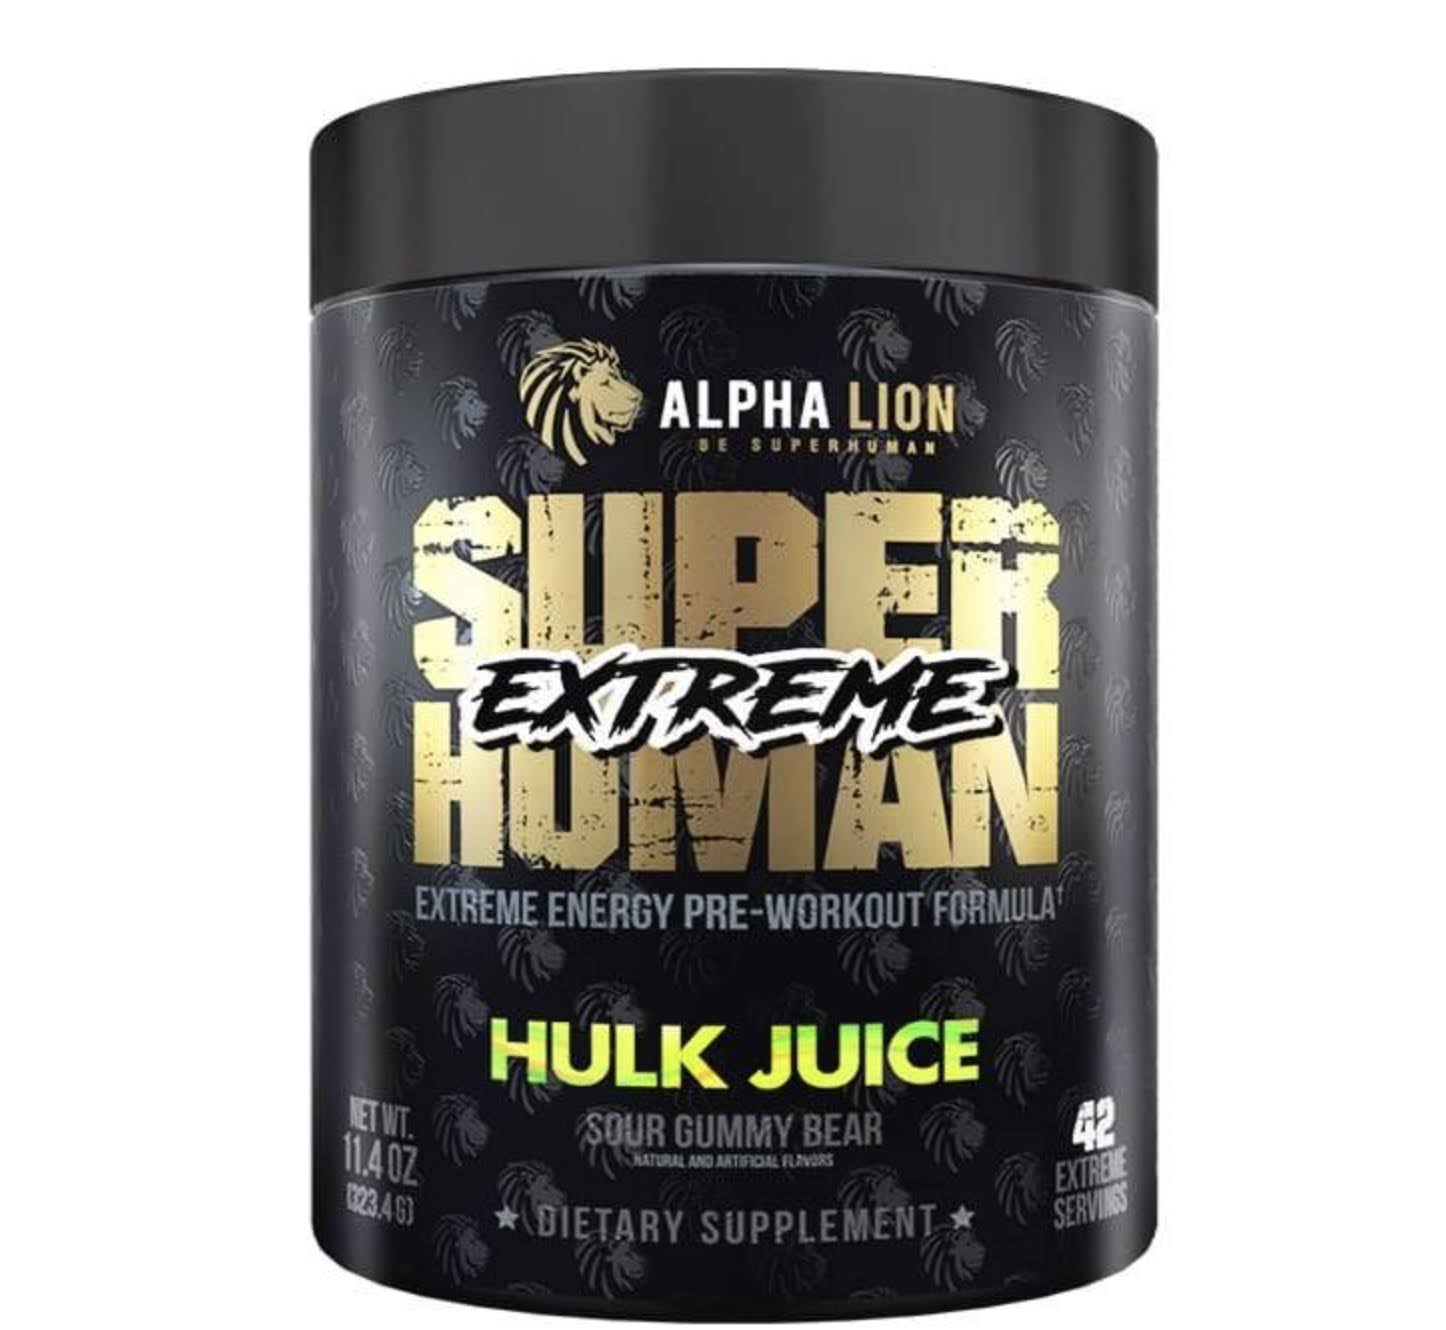 Alpha Lion Super Human Extreme, Hulk Juice (21 Serving)